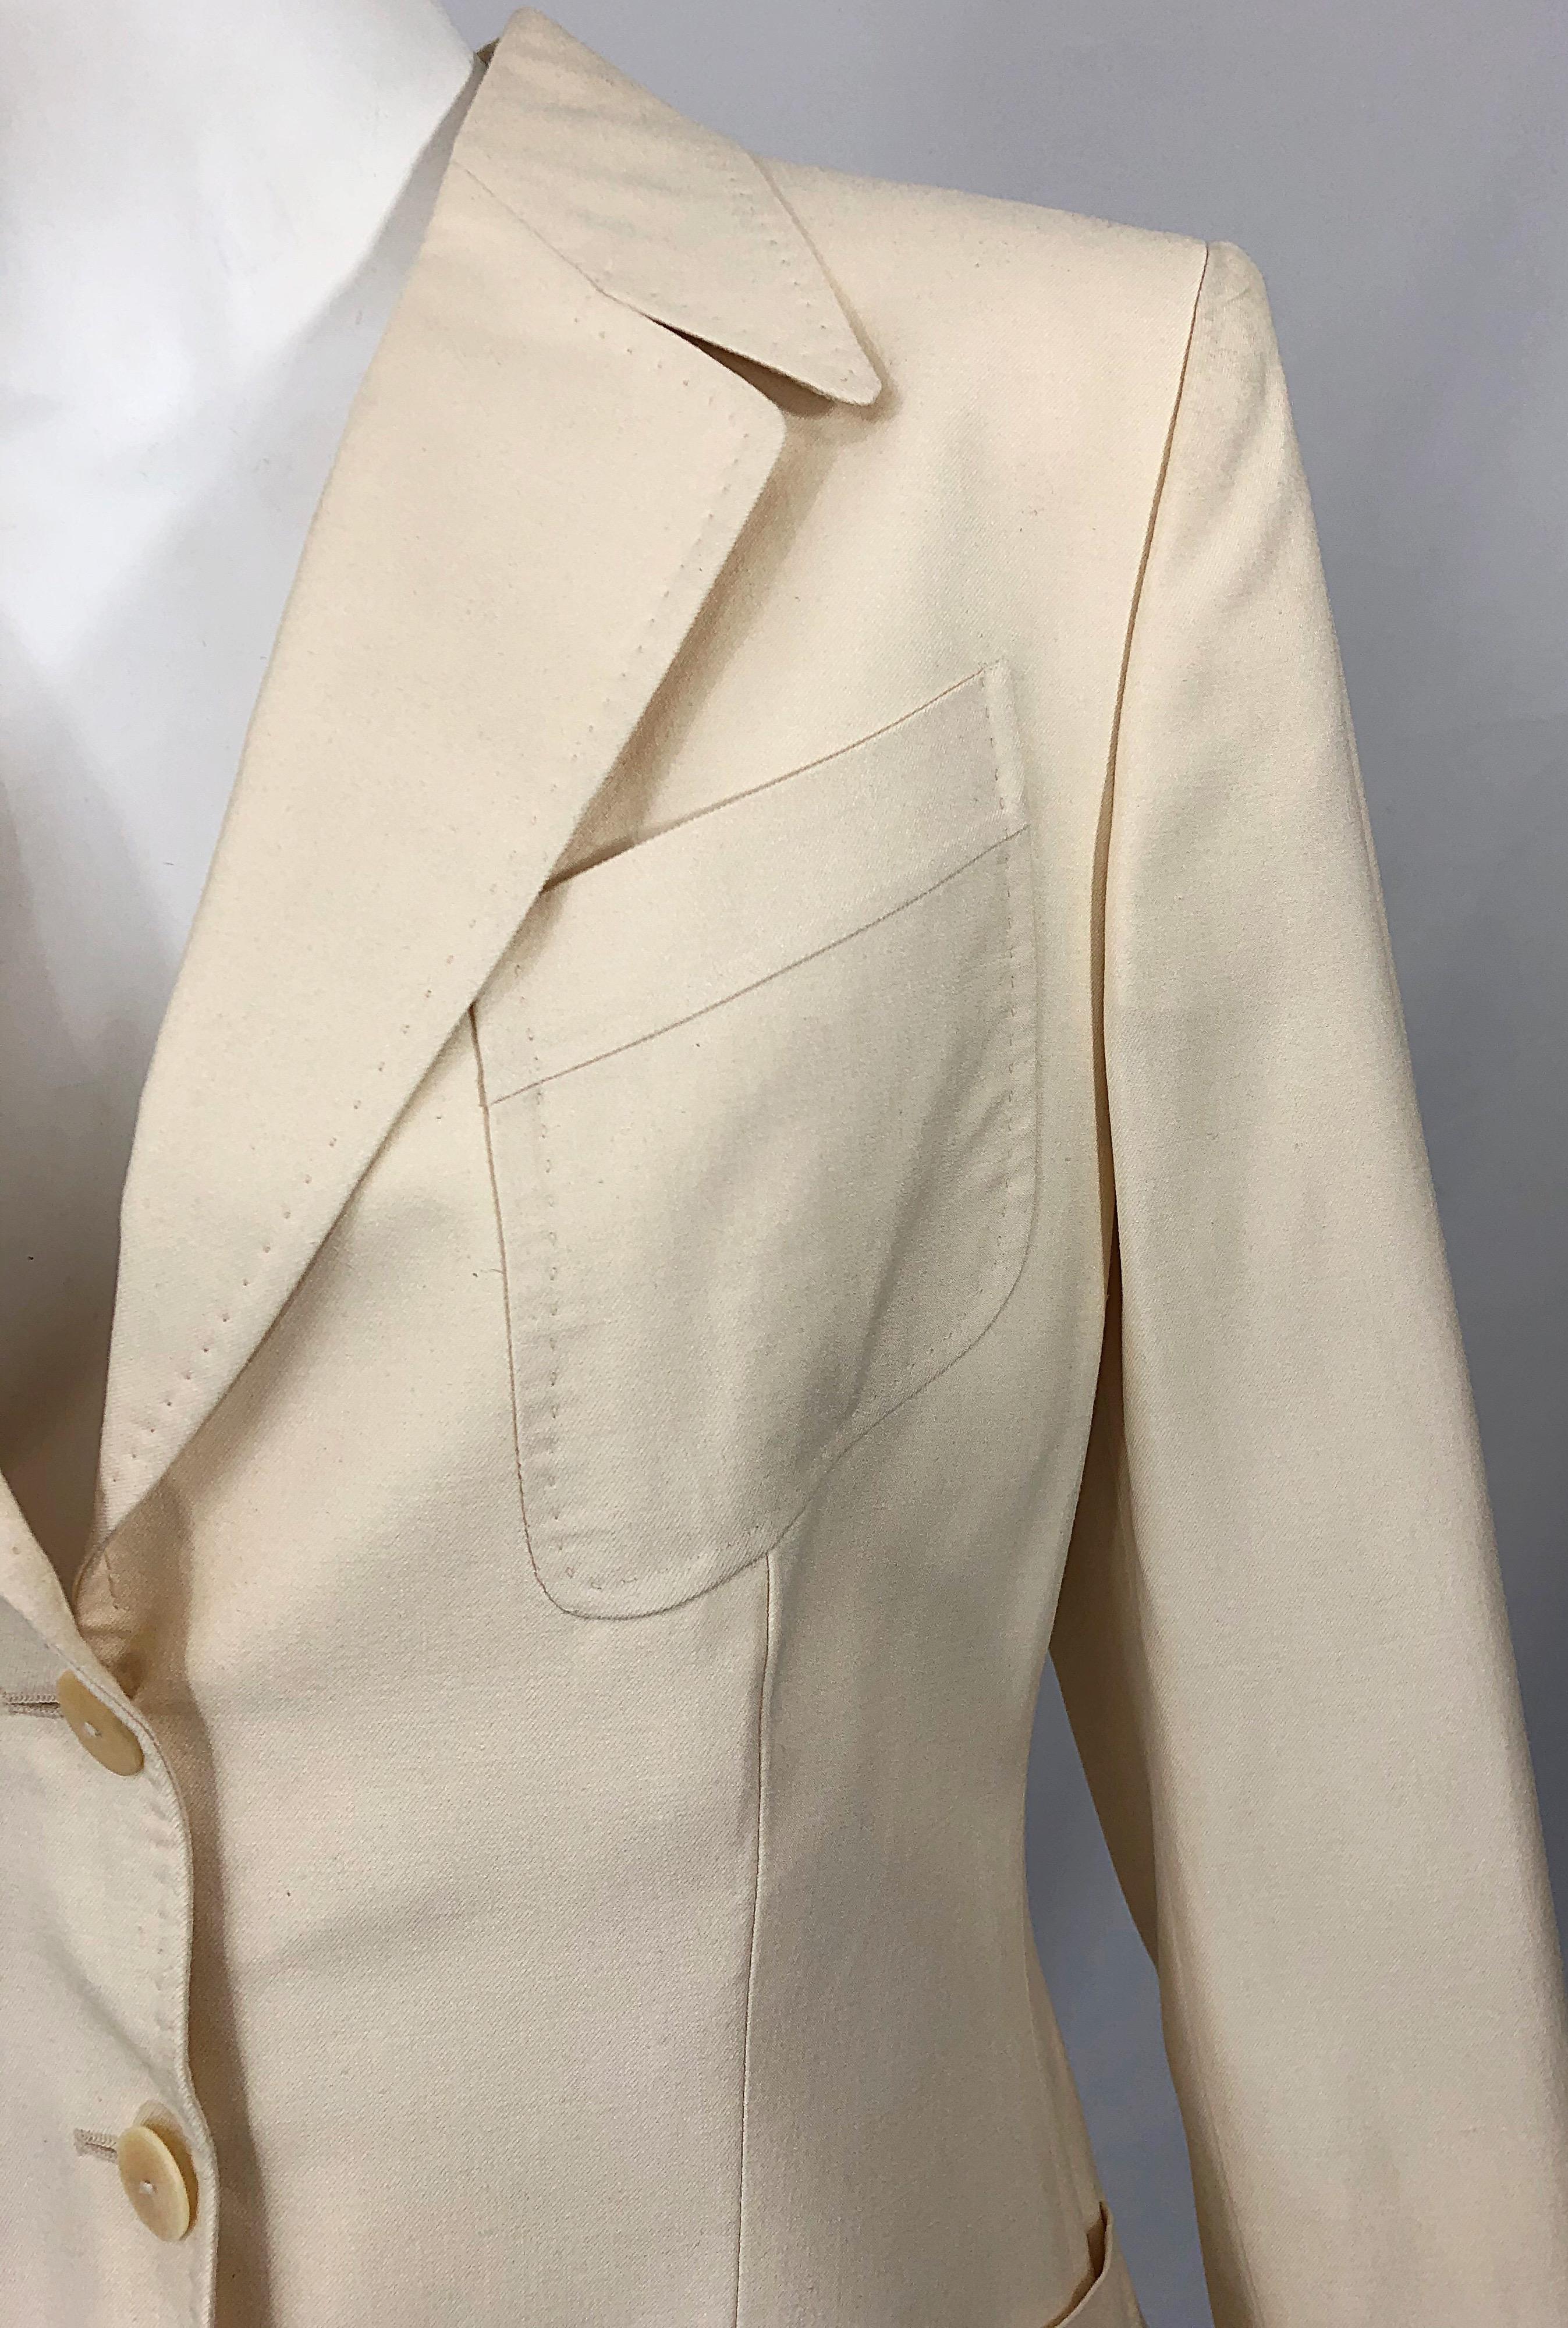 Veste blazer vintage Thierry Mugler Couture en soie ivoire (années 1990), taille 40/US 8 en vente 1